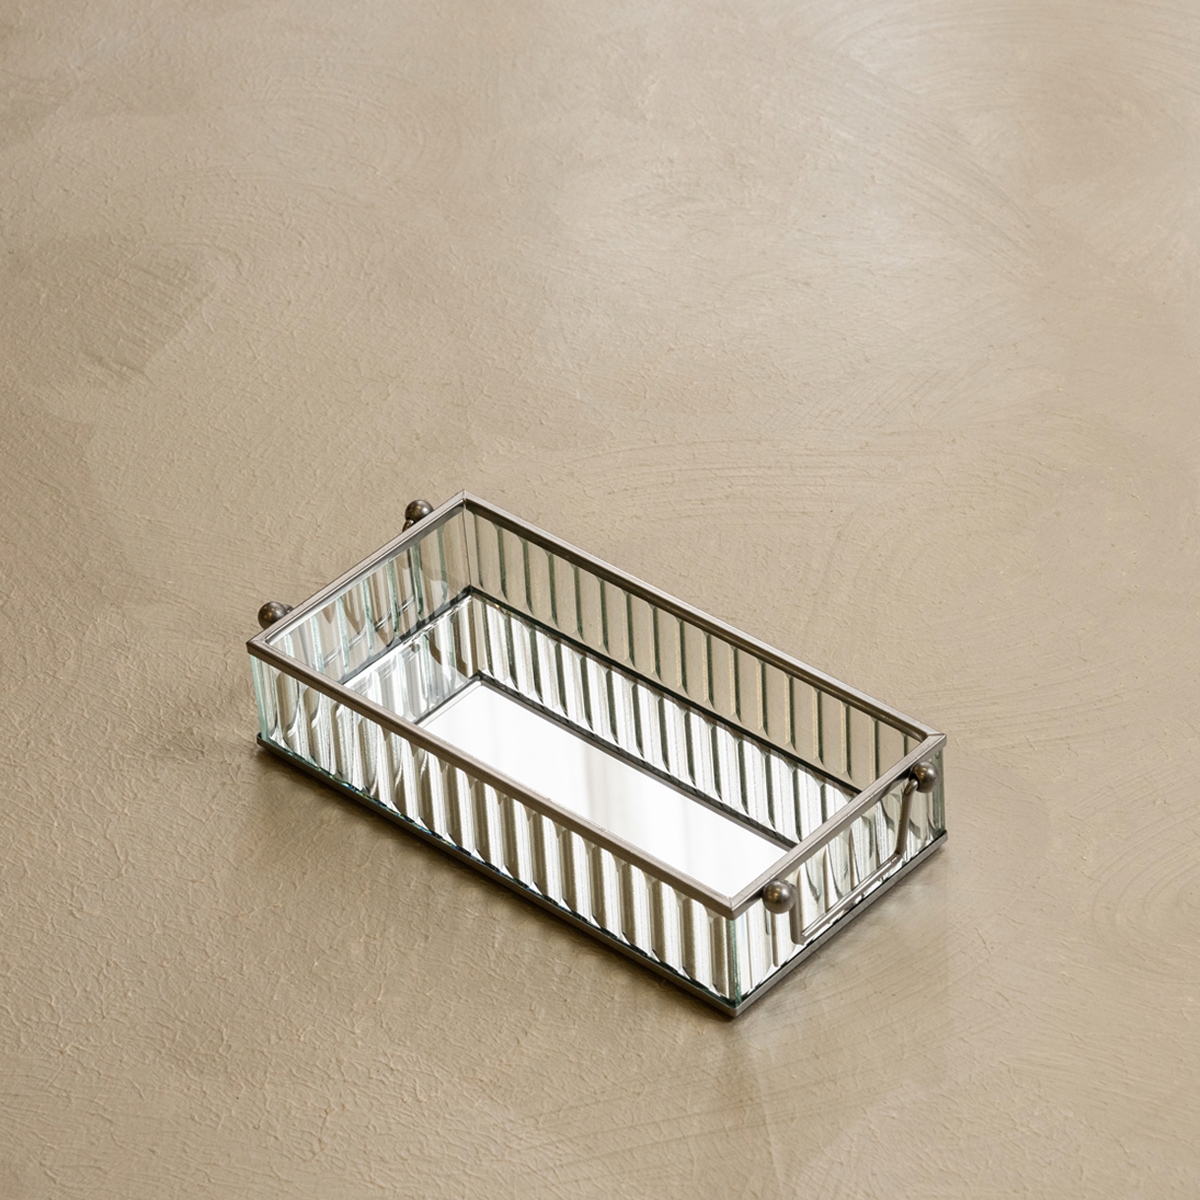 Buy Ribbed mirror deco tray silver 22x10x4. 5 cm in Kuwait